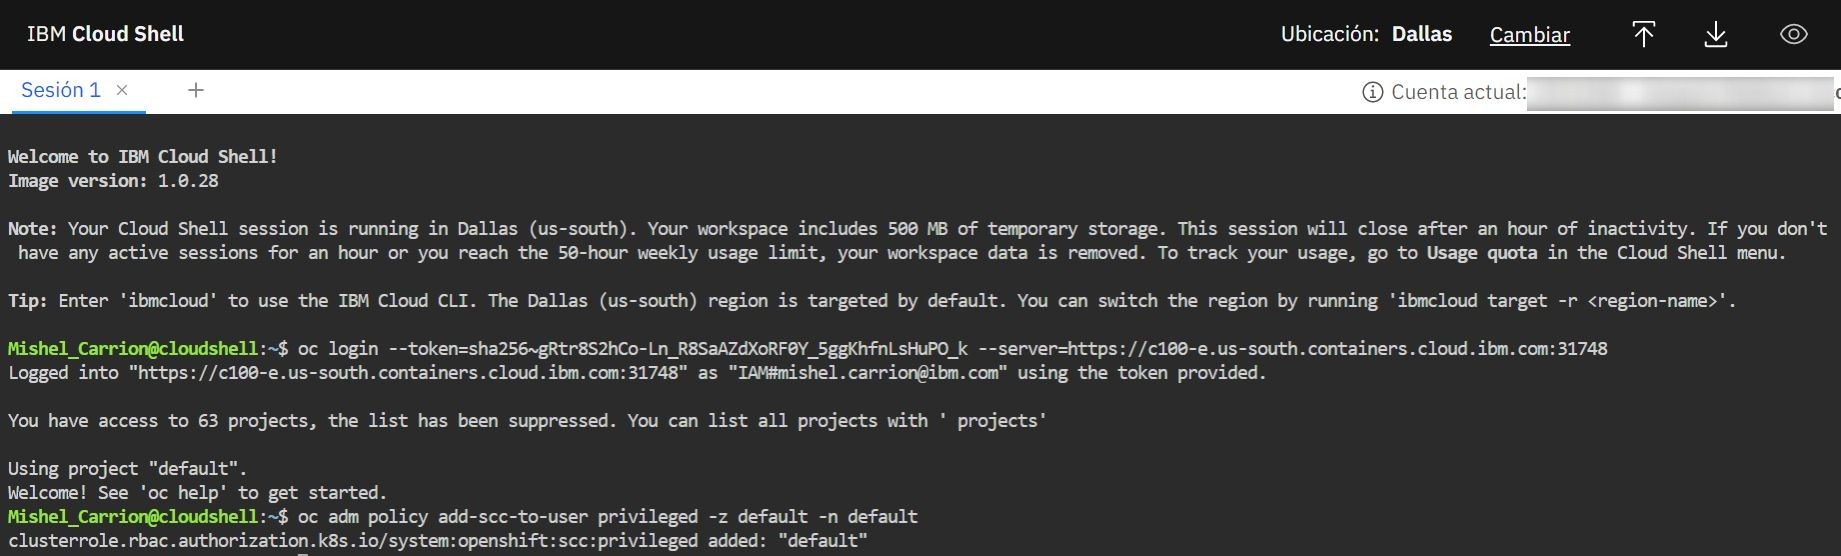 Screenshot de la consola de IBM Cloud Shell